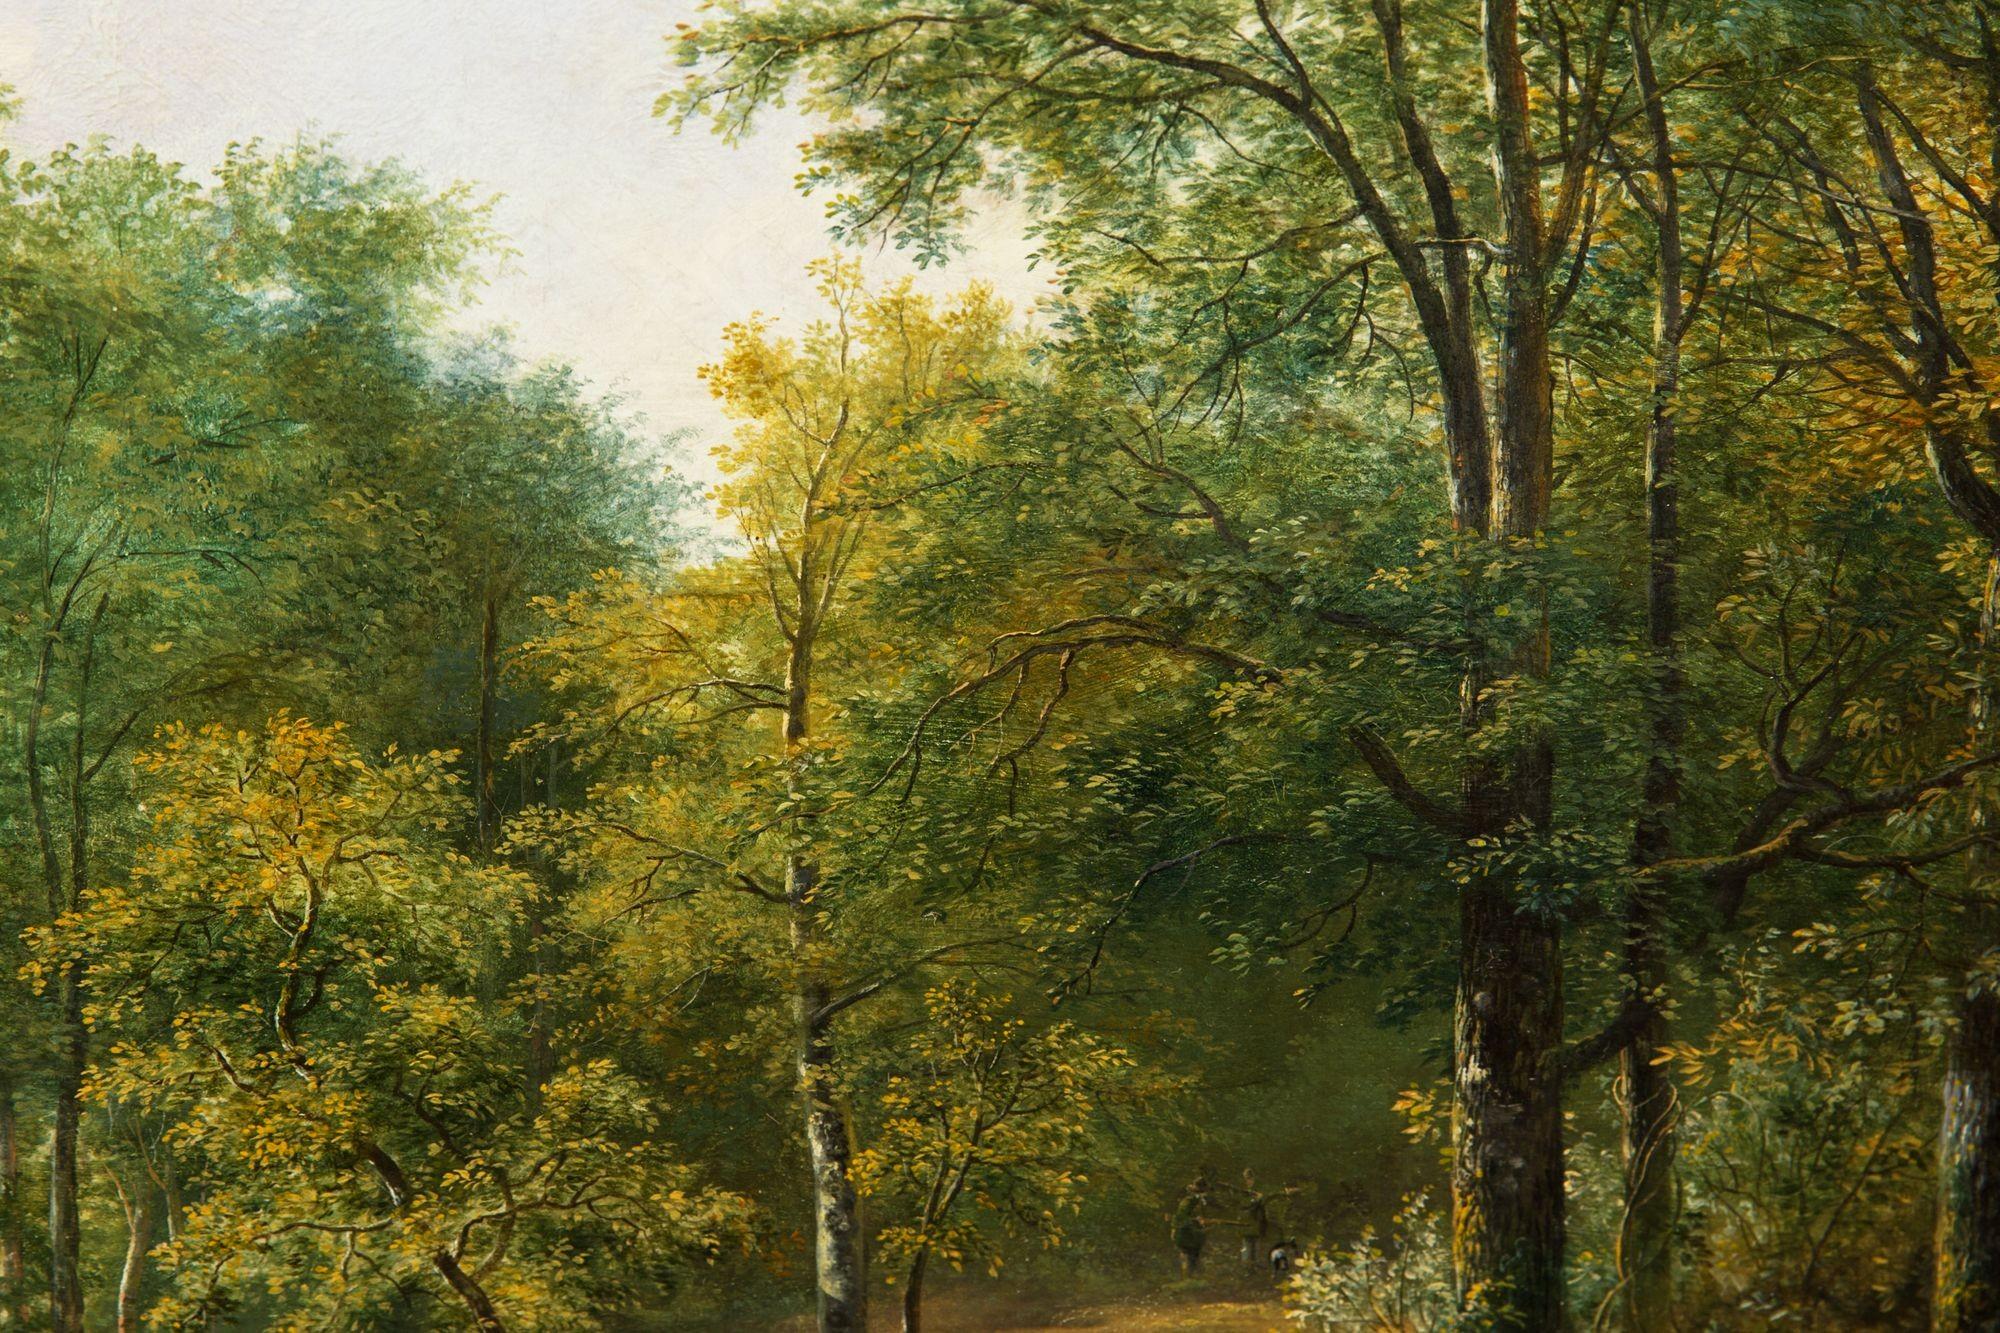 Landscape Painting 